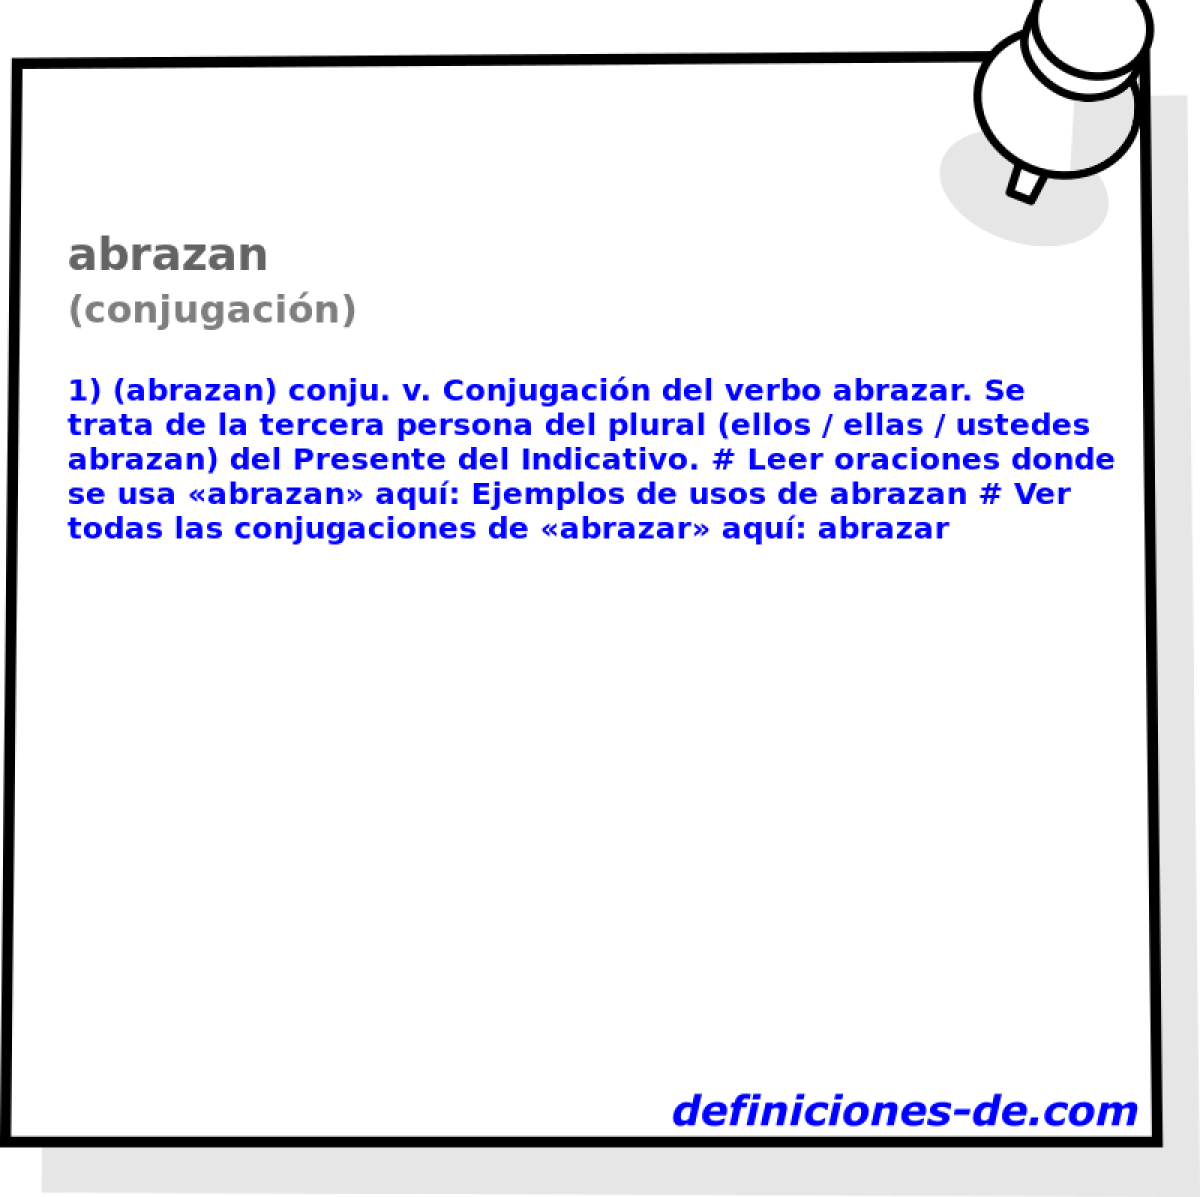 abrazan (conjugacin)